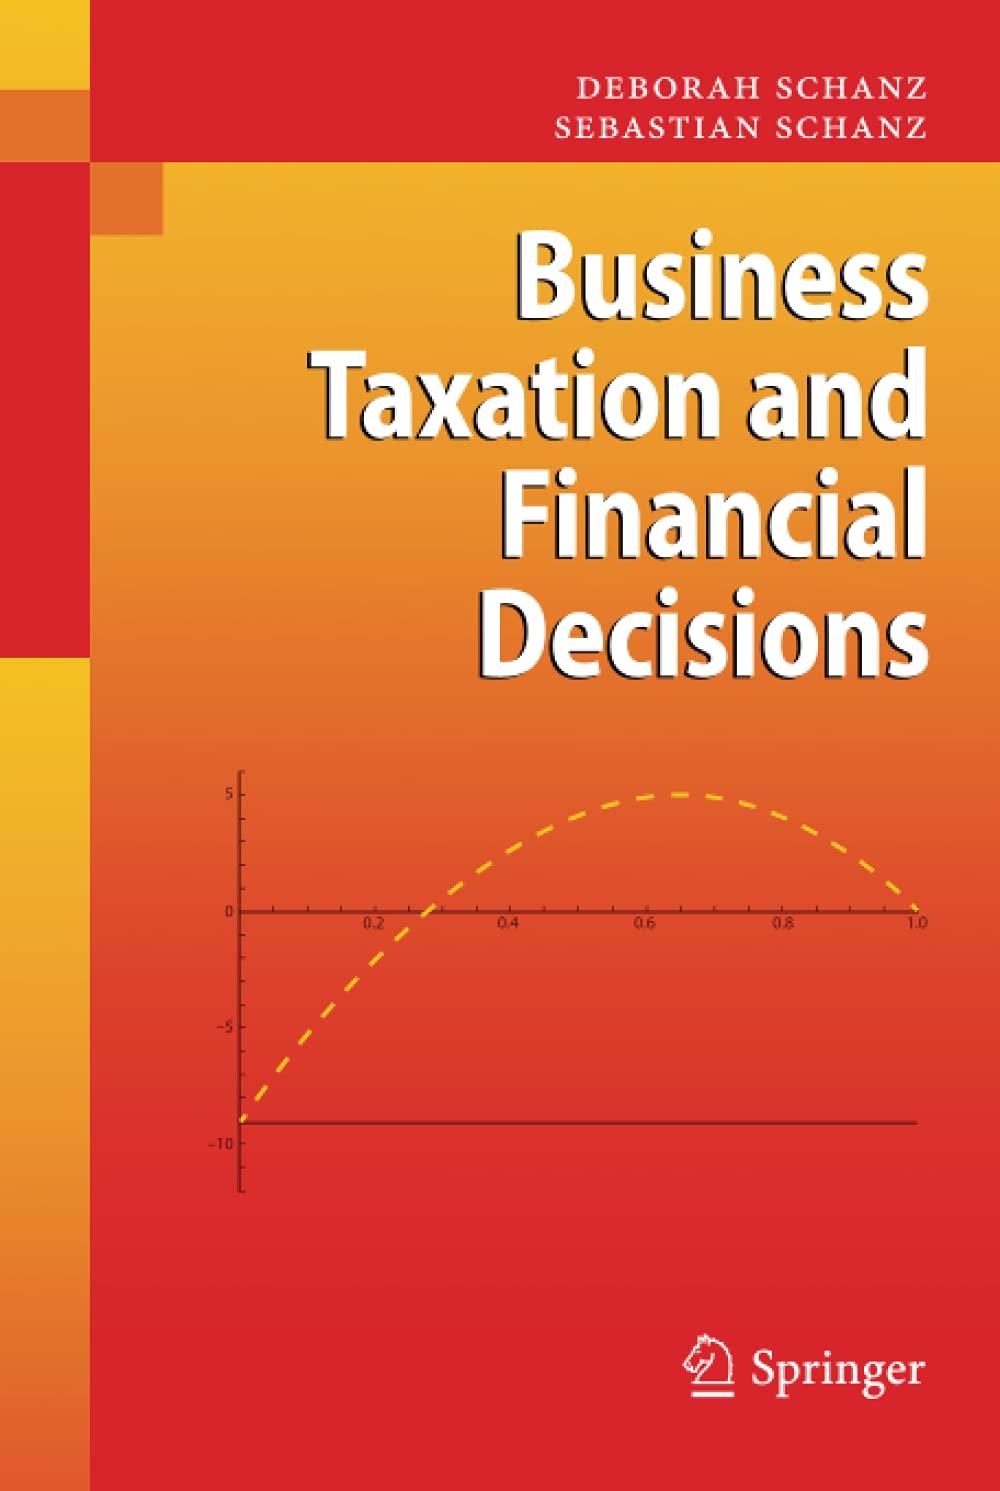 business taxation and financial decisions 1st edition sebastian schanz, deborah schanz 3642032834,